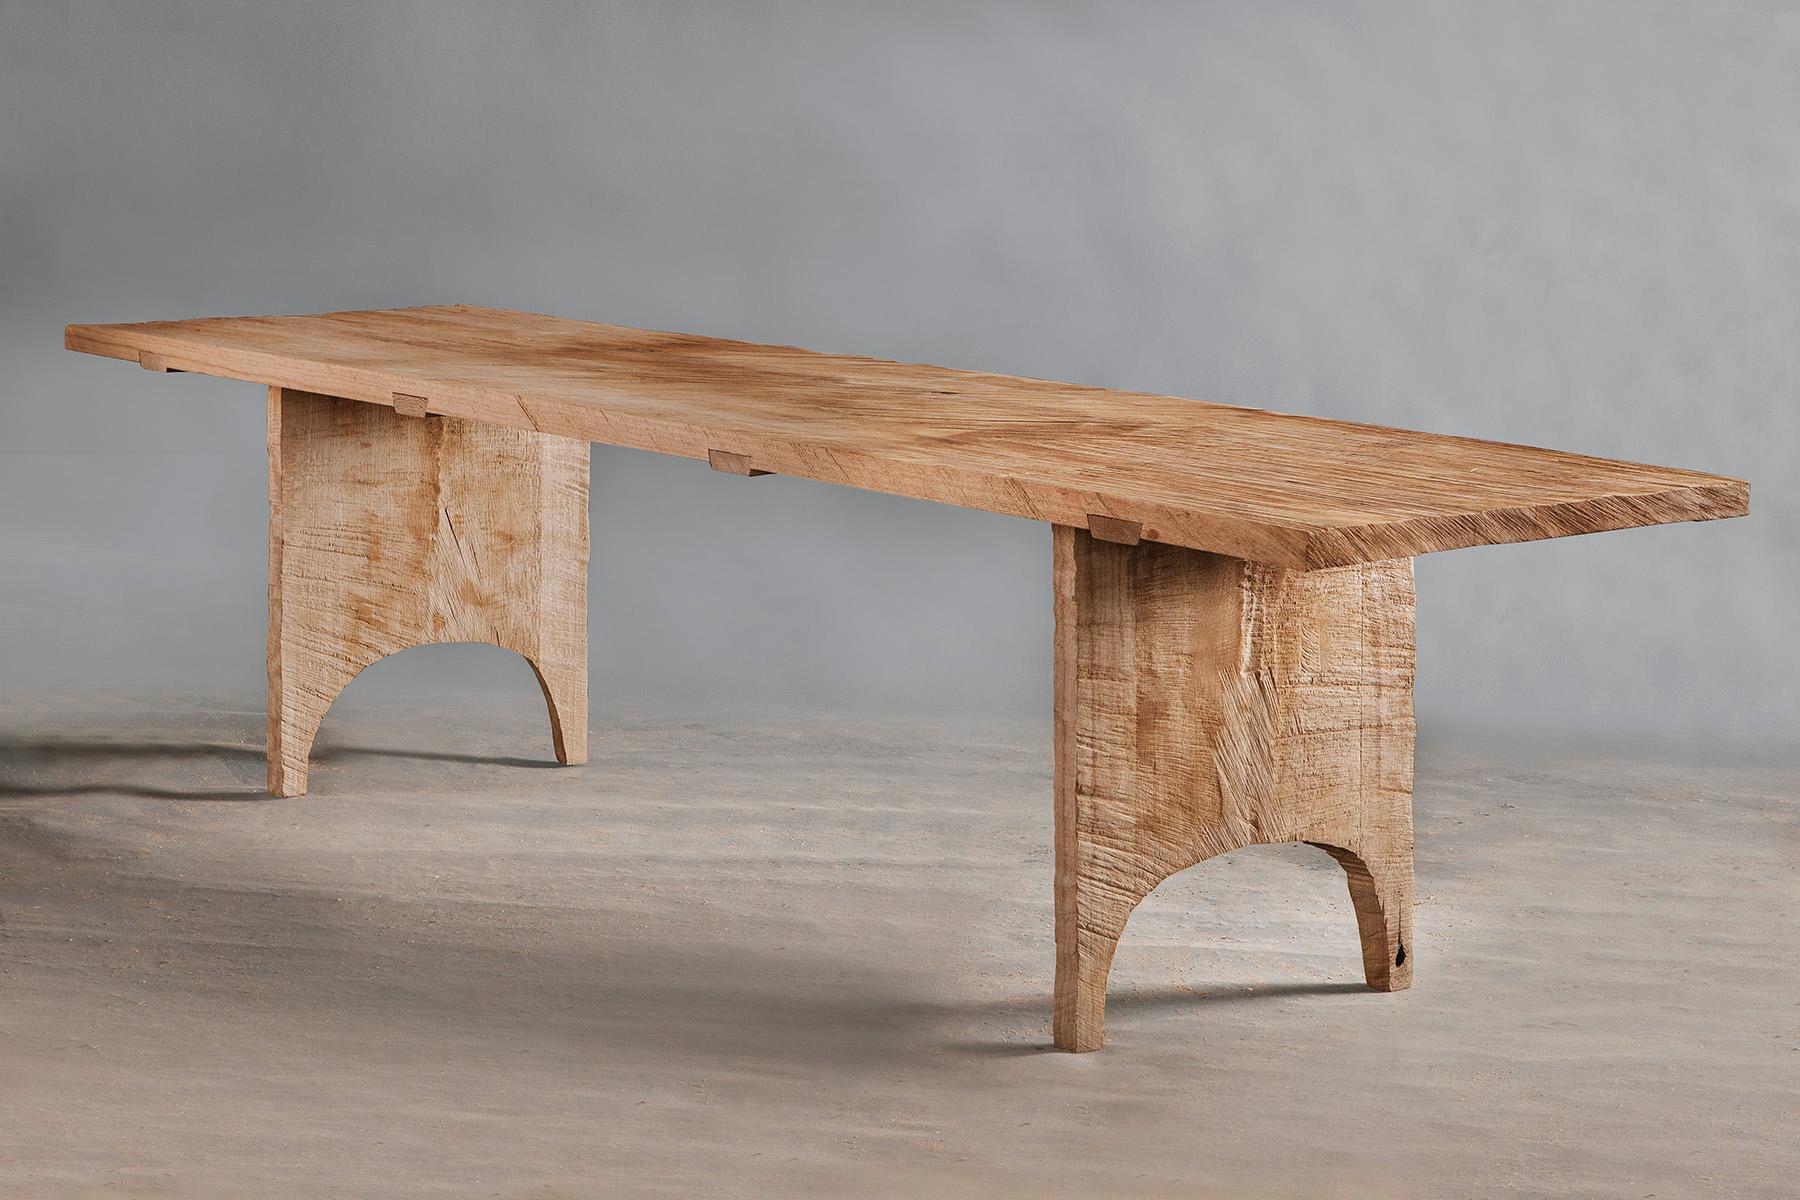 Table de salle à manger en chêne massif (+ huile de lin)
(Utilisation extérieure possible)


Le mobilier Warm a été réalisé par le designer russe Denis Milovanov du studio 